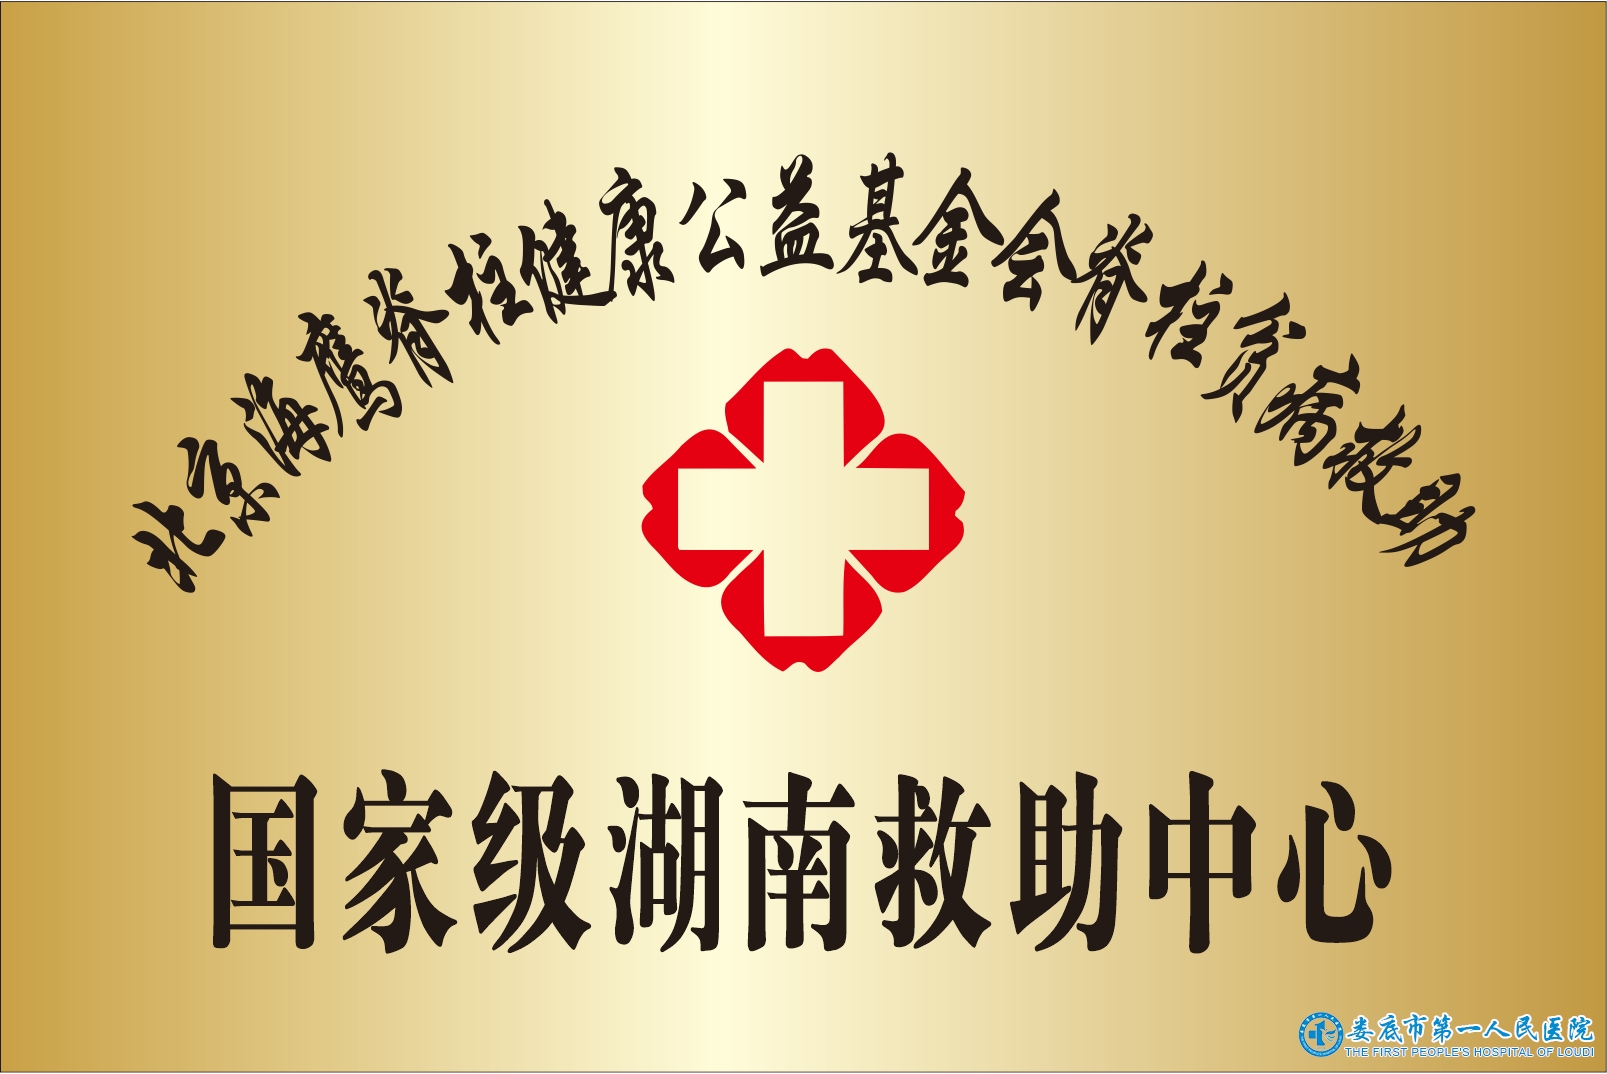 北京海鹰脊柱健康公益基金会脊柱贫病救助